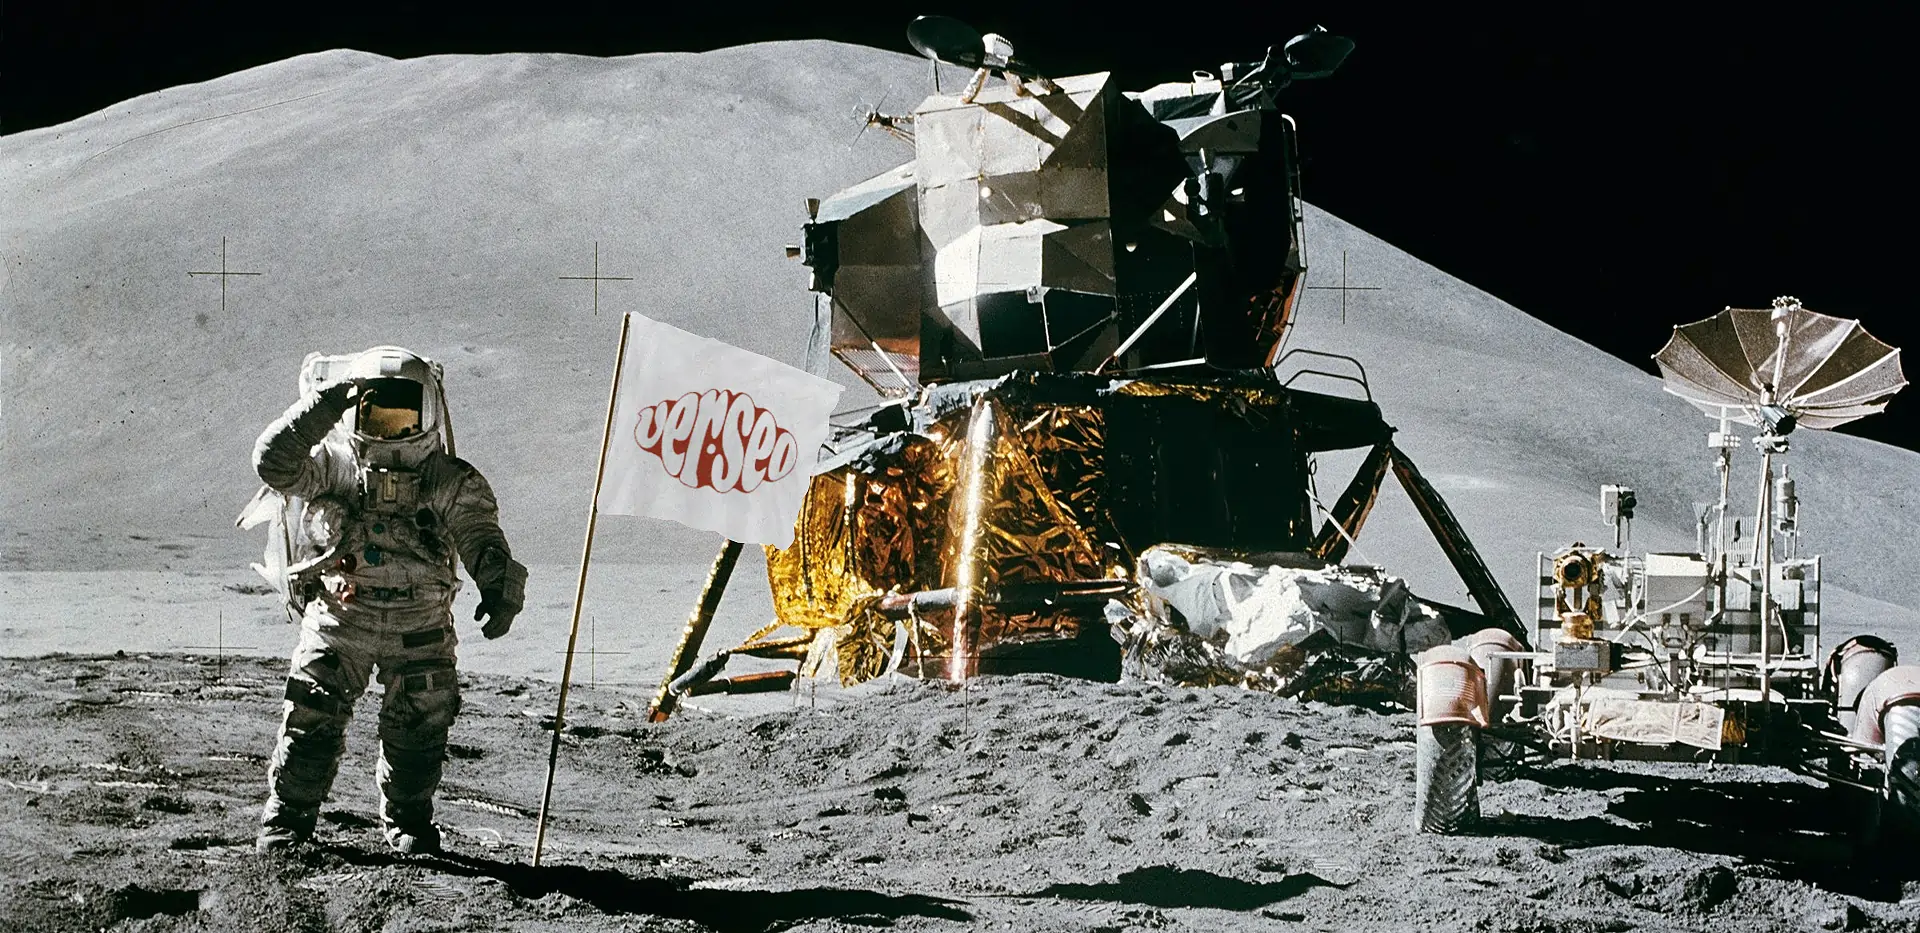 Amerizaje de astronauta en la luna y bandera de Verseo